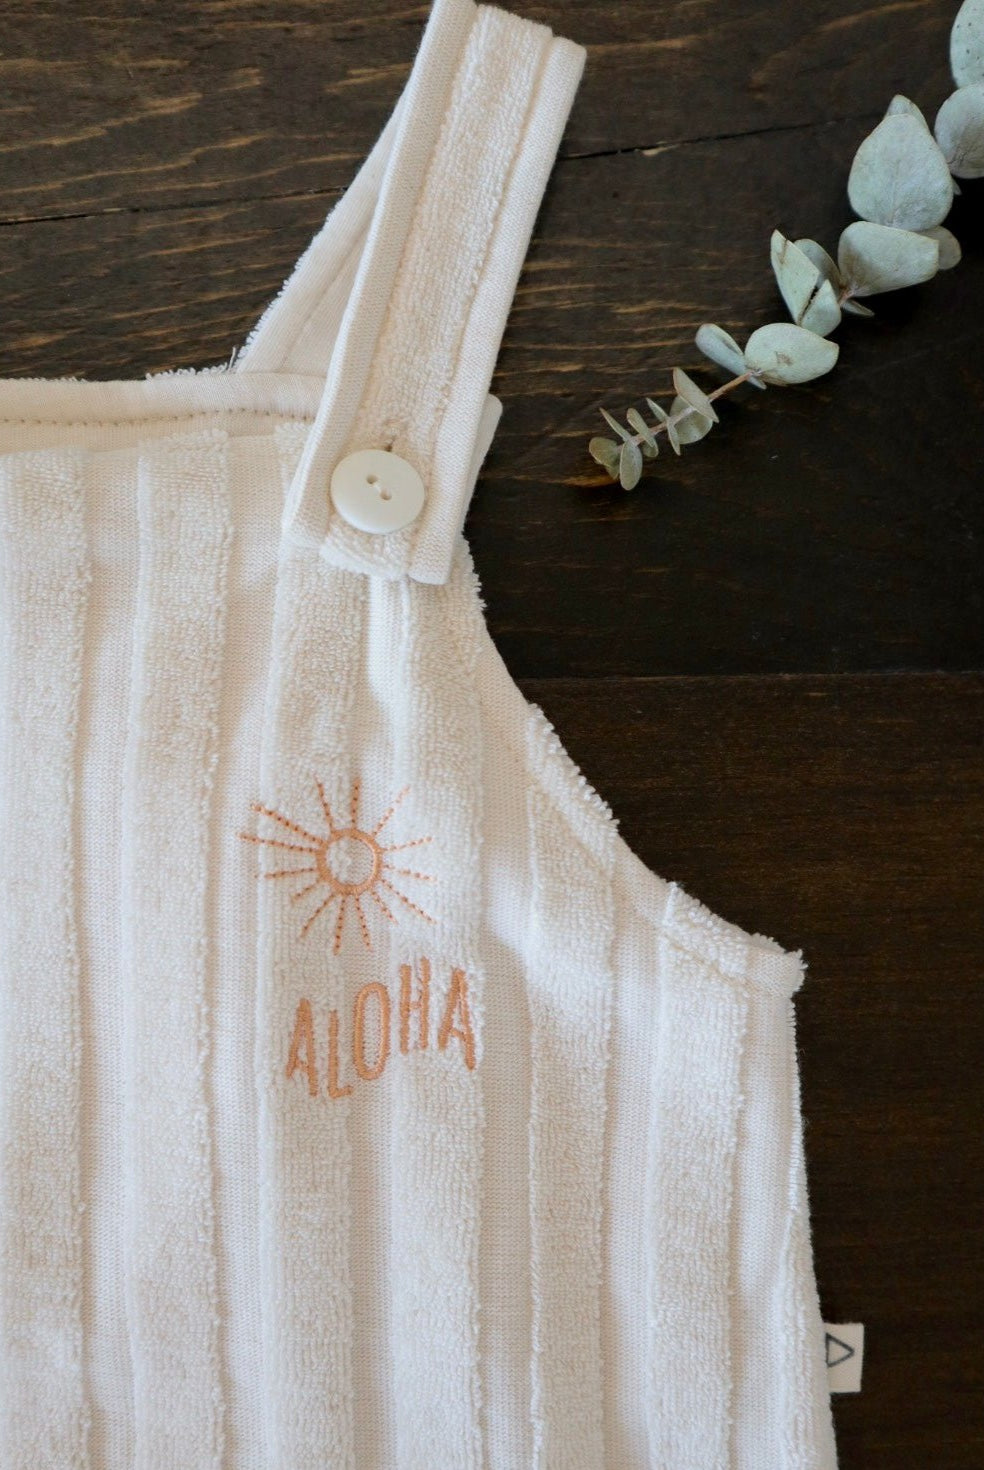 Aloha baby clothes